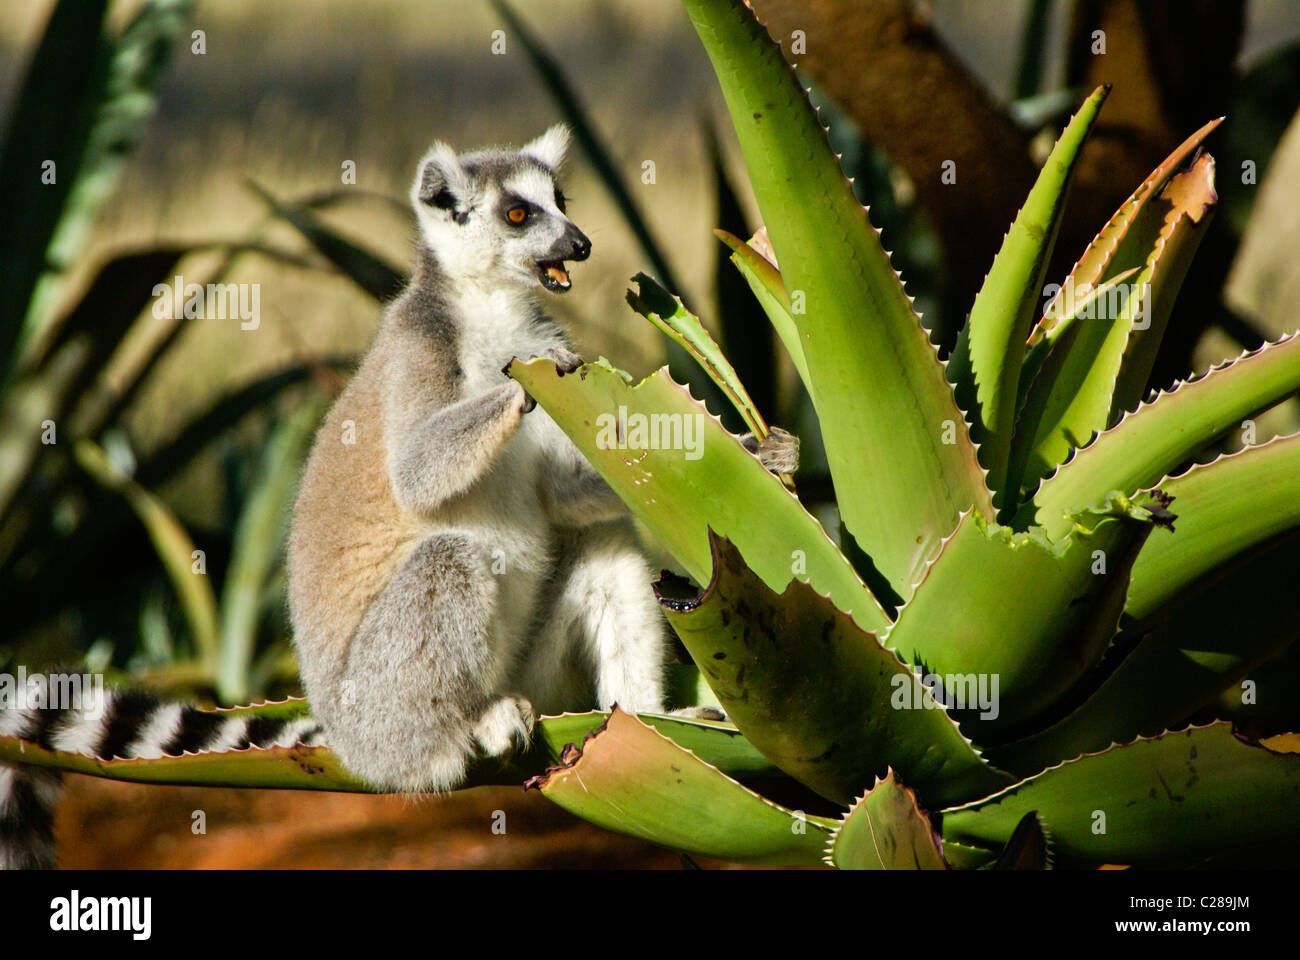 Ring-tailed lemur feeding on aloe plant, Madagascar Stock Photo